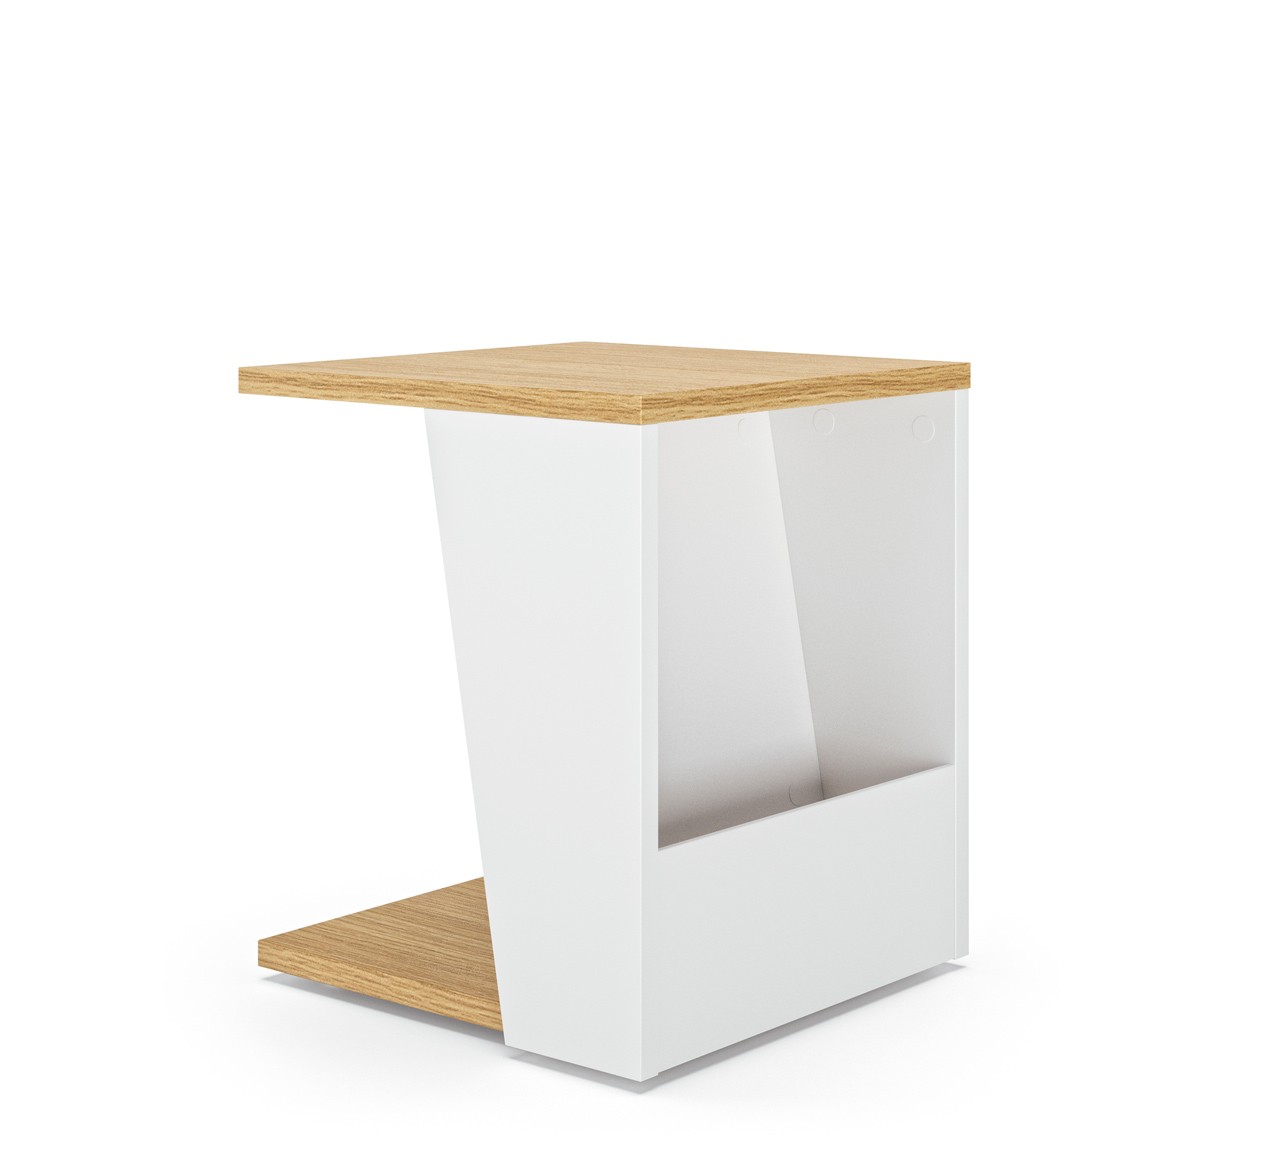 A mesa Albi é uma peça moderna que combina beleza e funcionalidade para a sua casa ou escritório!